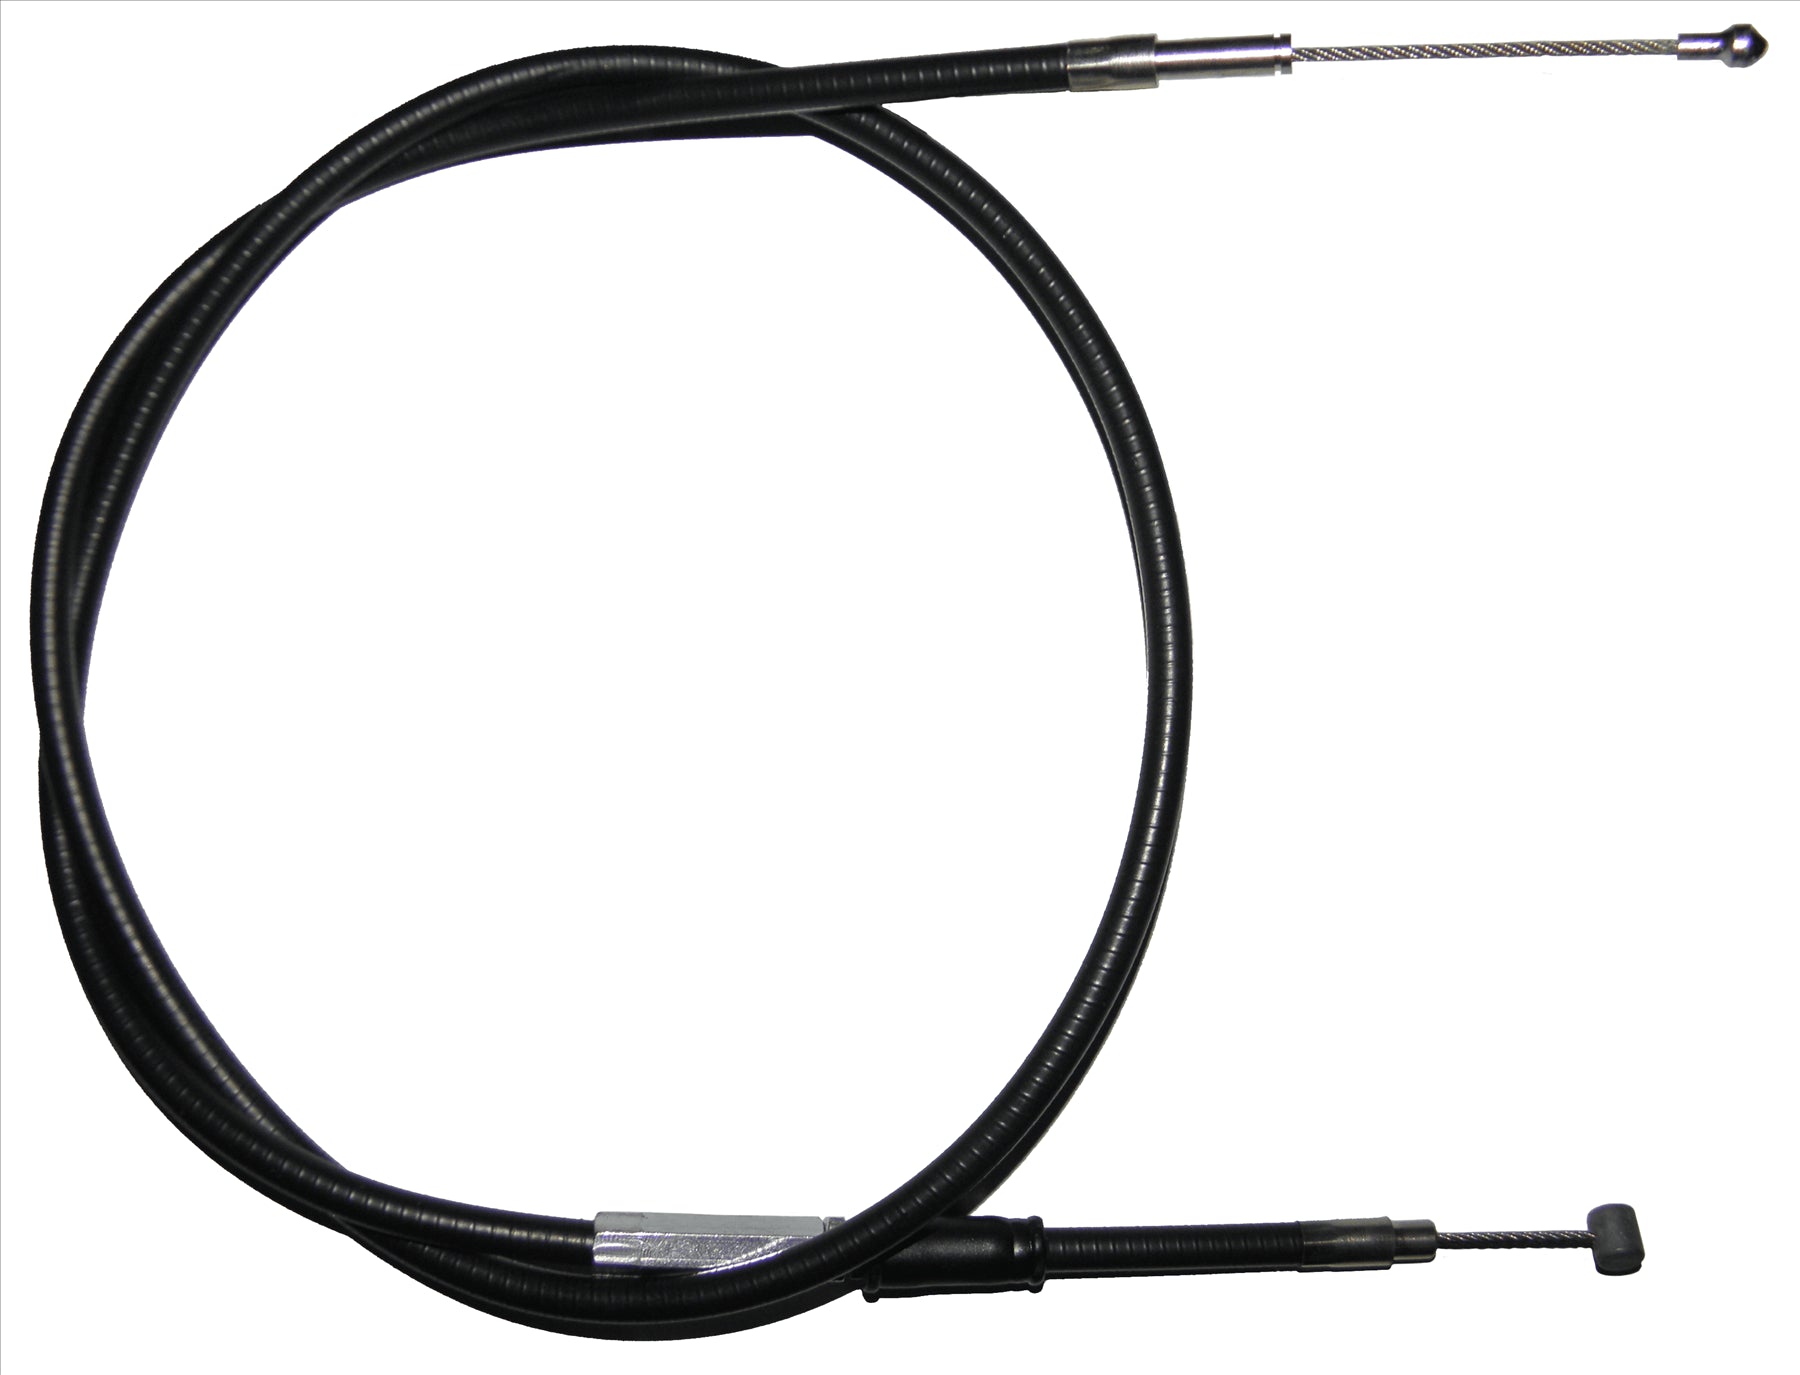 Apico Black Clutch Cable For KTM SXC 620 1999